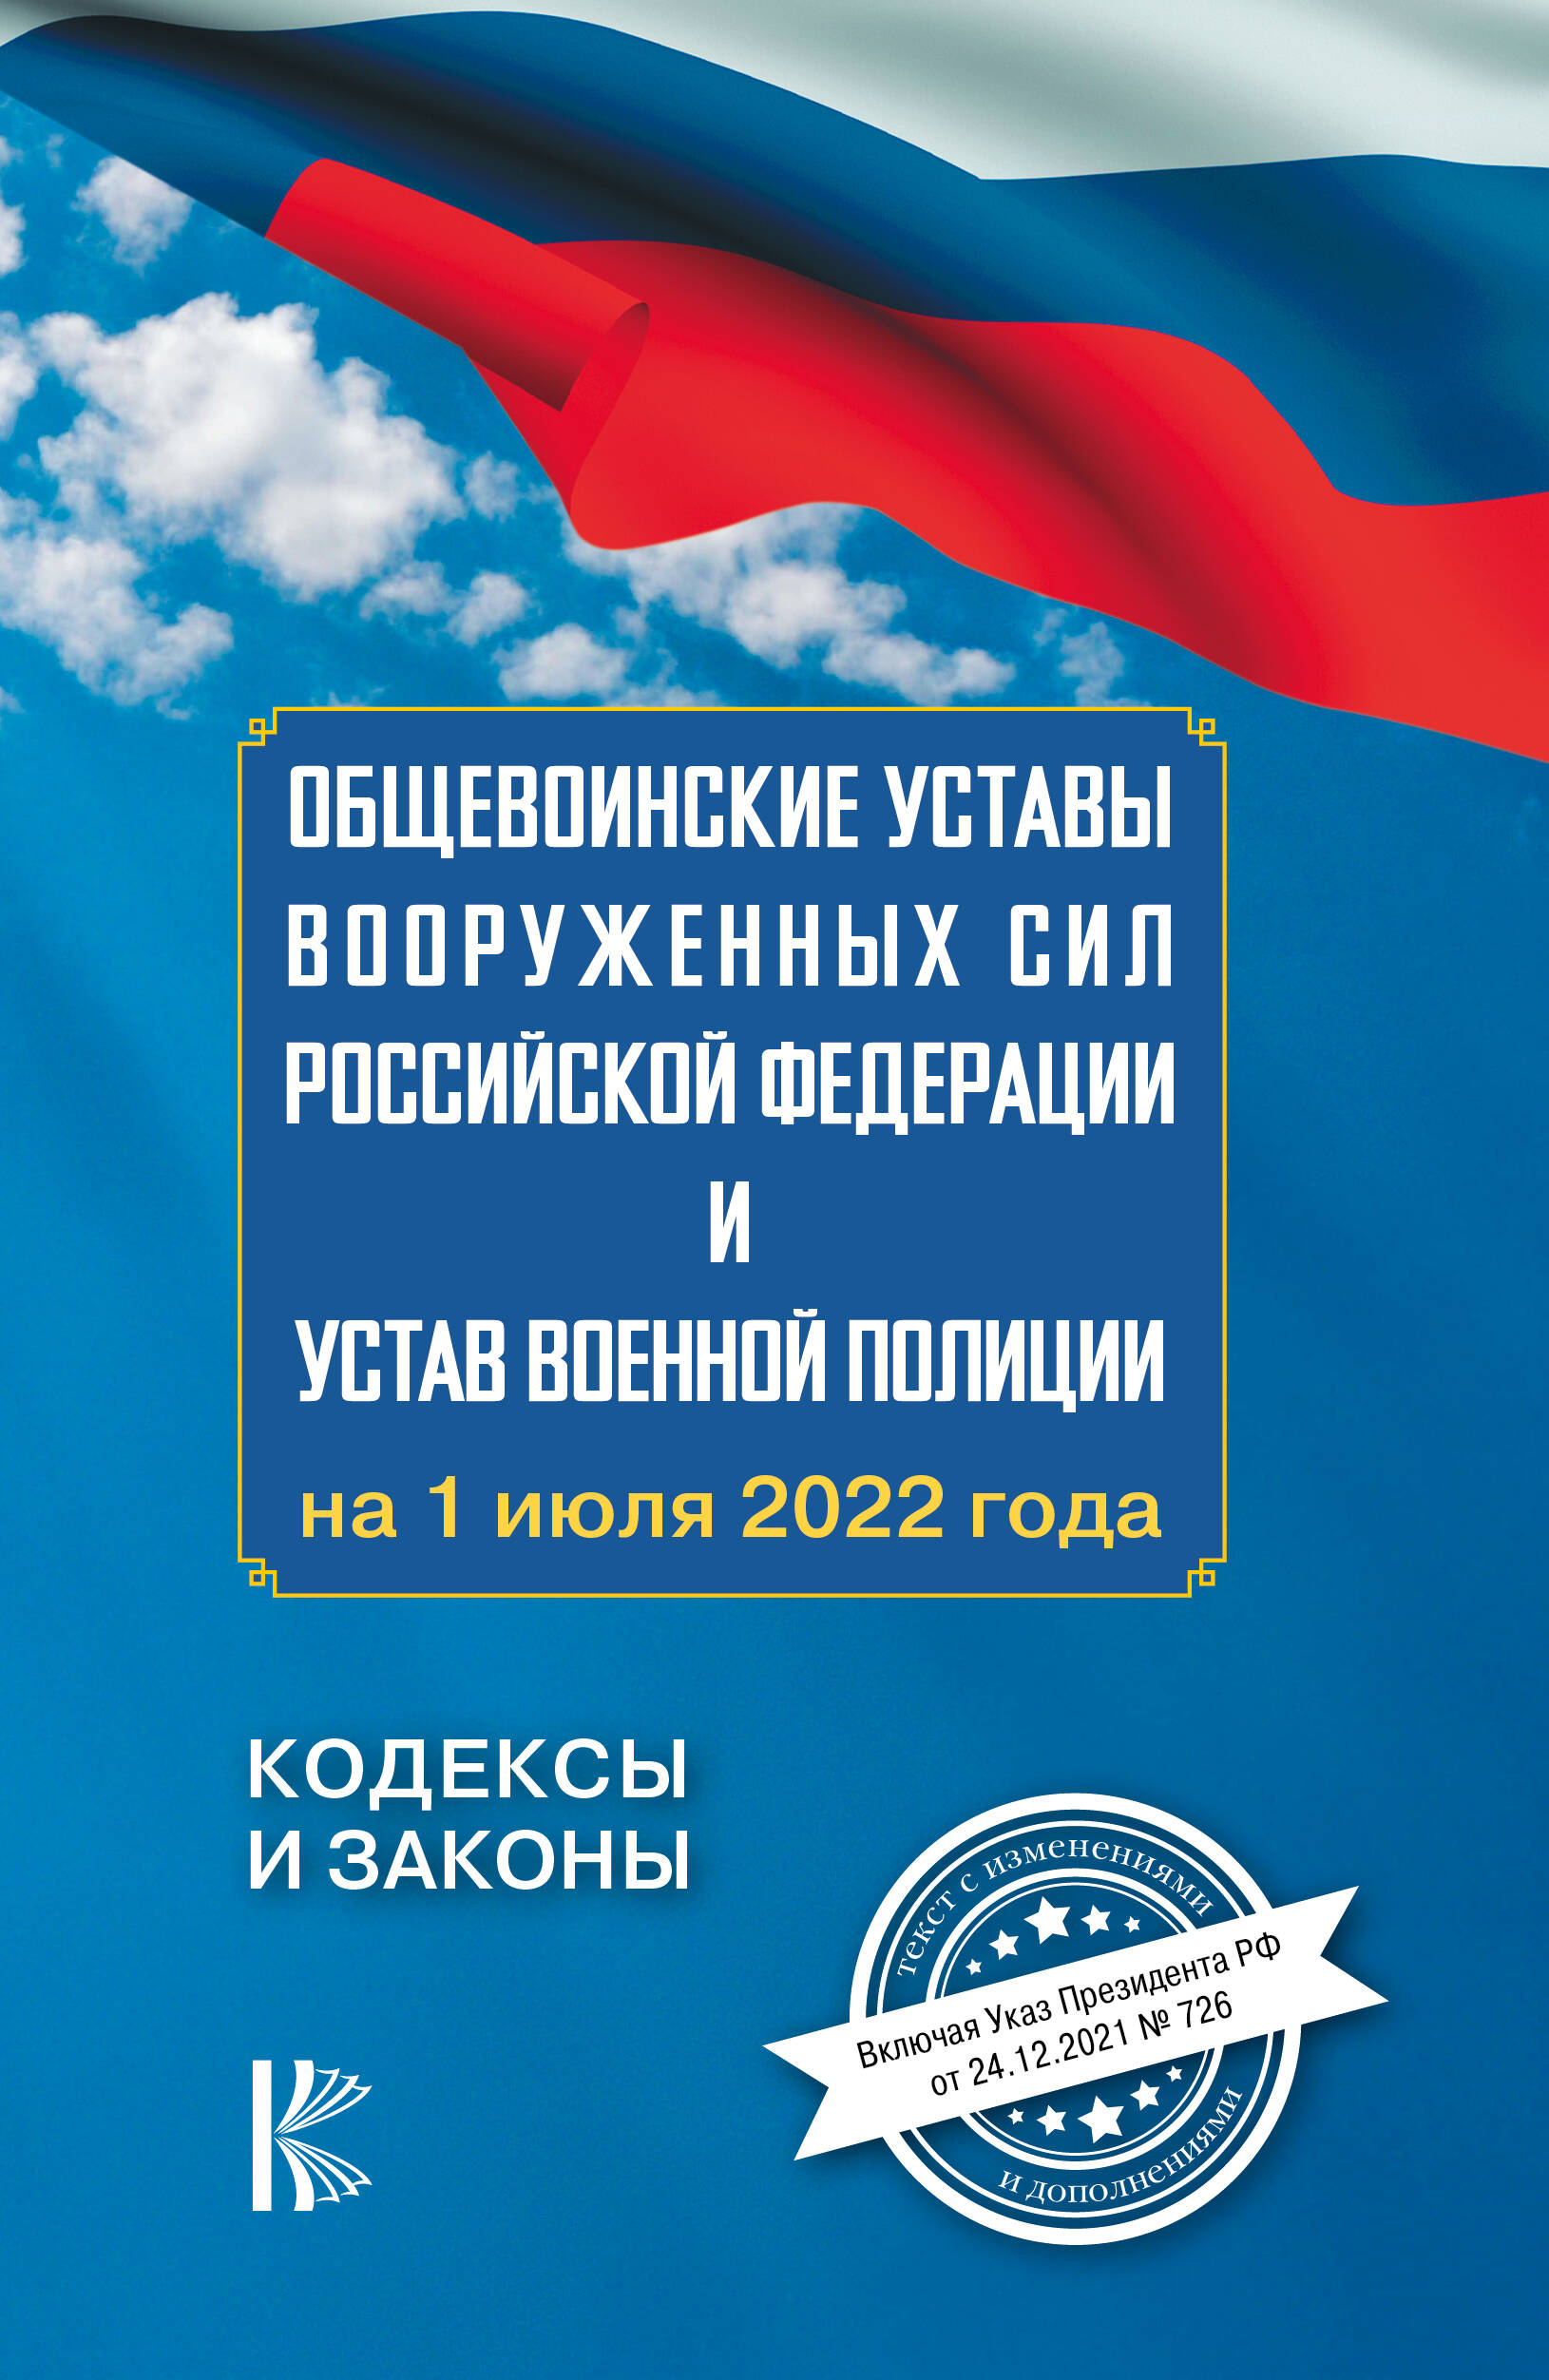  Общевоинские уставы Вооруженных Сил Российской Федерации на 1 июля 2022 года - страница 0